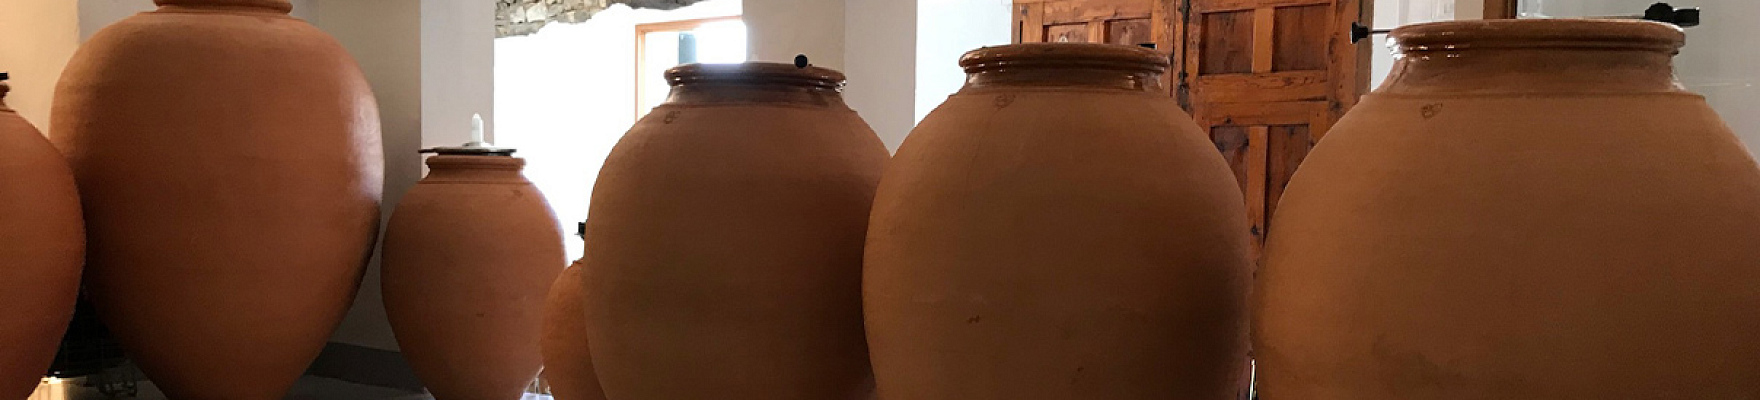 Vasijas de barro que utilizan para la crianza en Baldovar 923